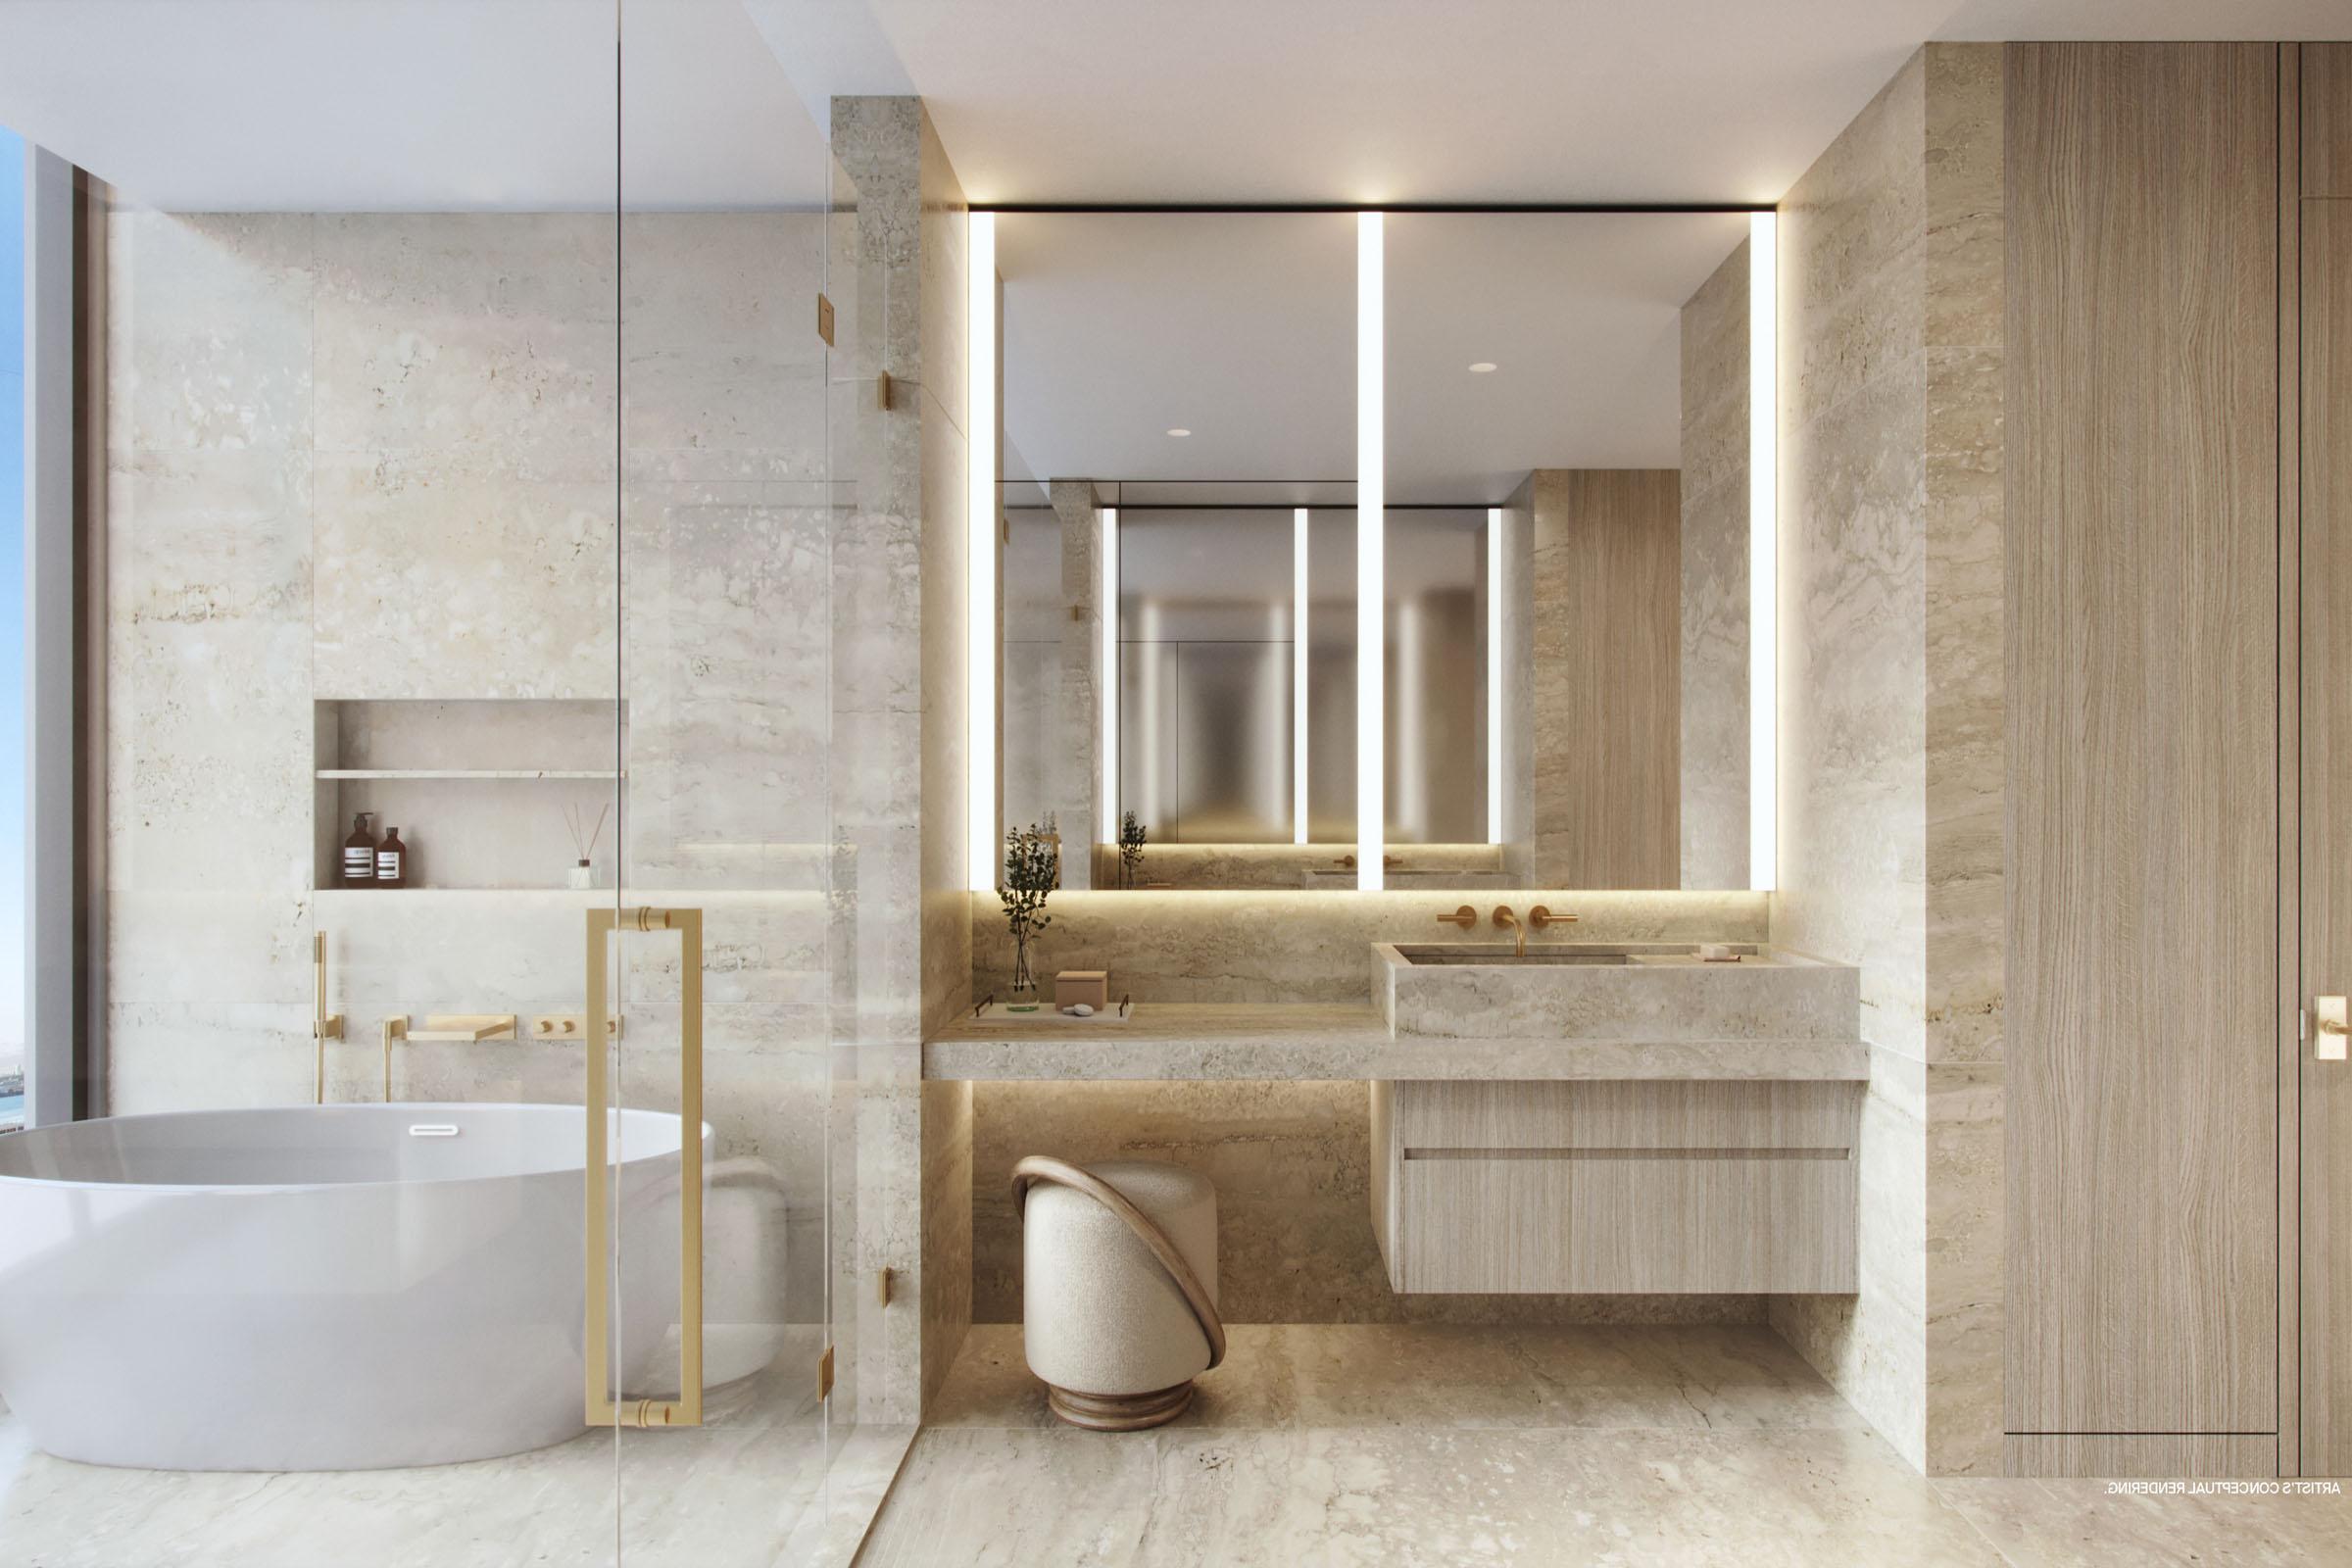 迈阿密瑞吉住宅主浴室的渲染图